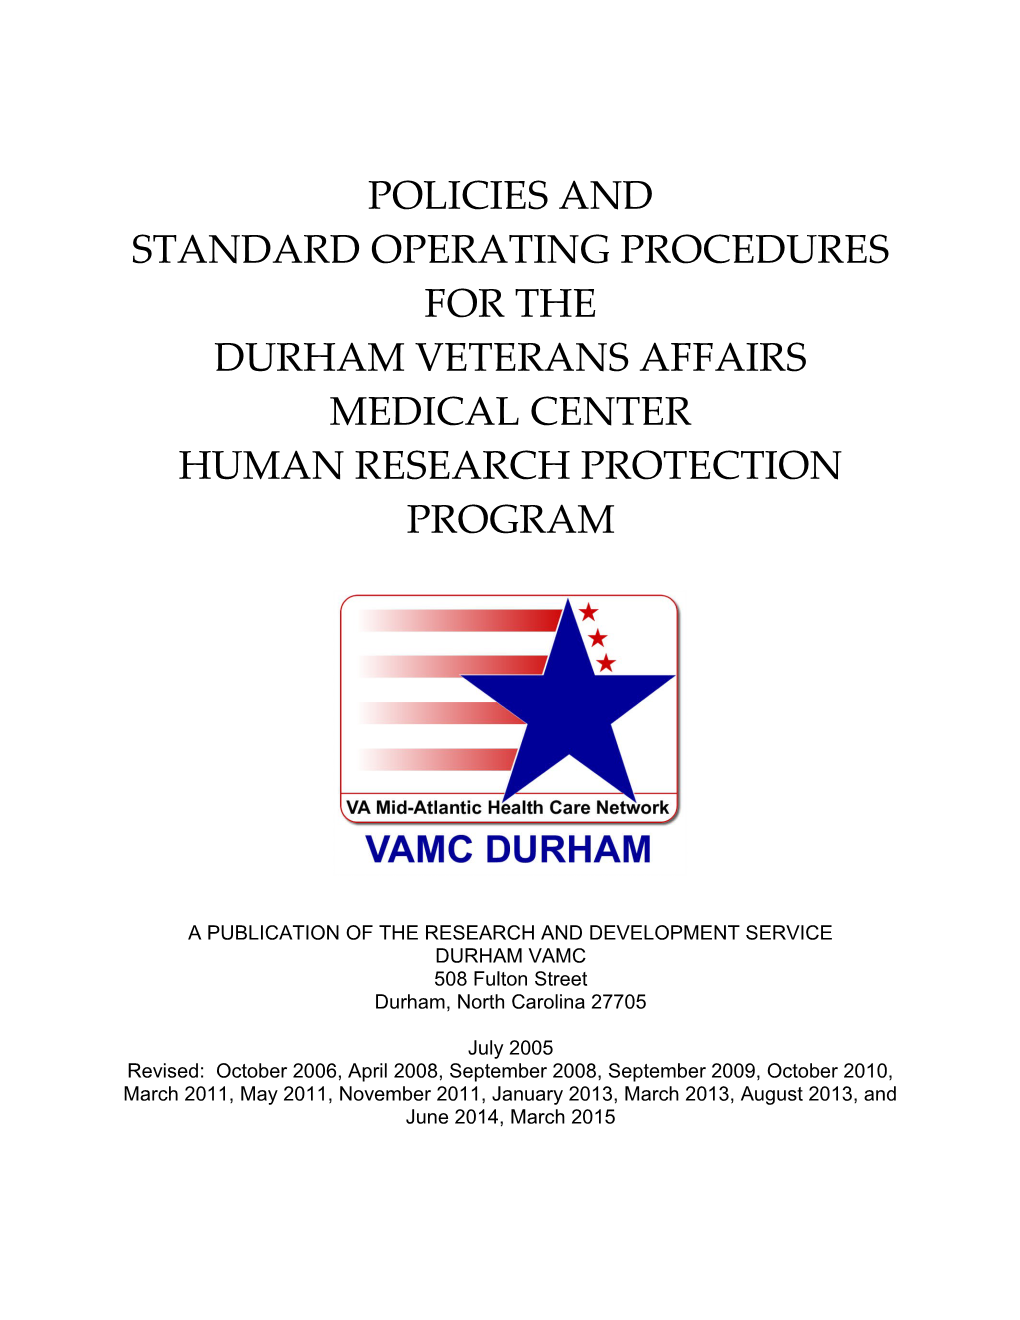 Durham Veterans Affairs Medical Center